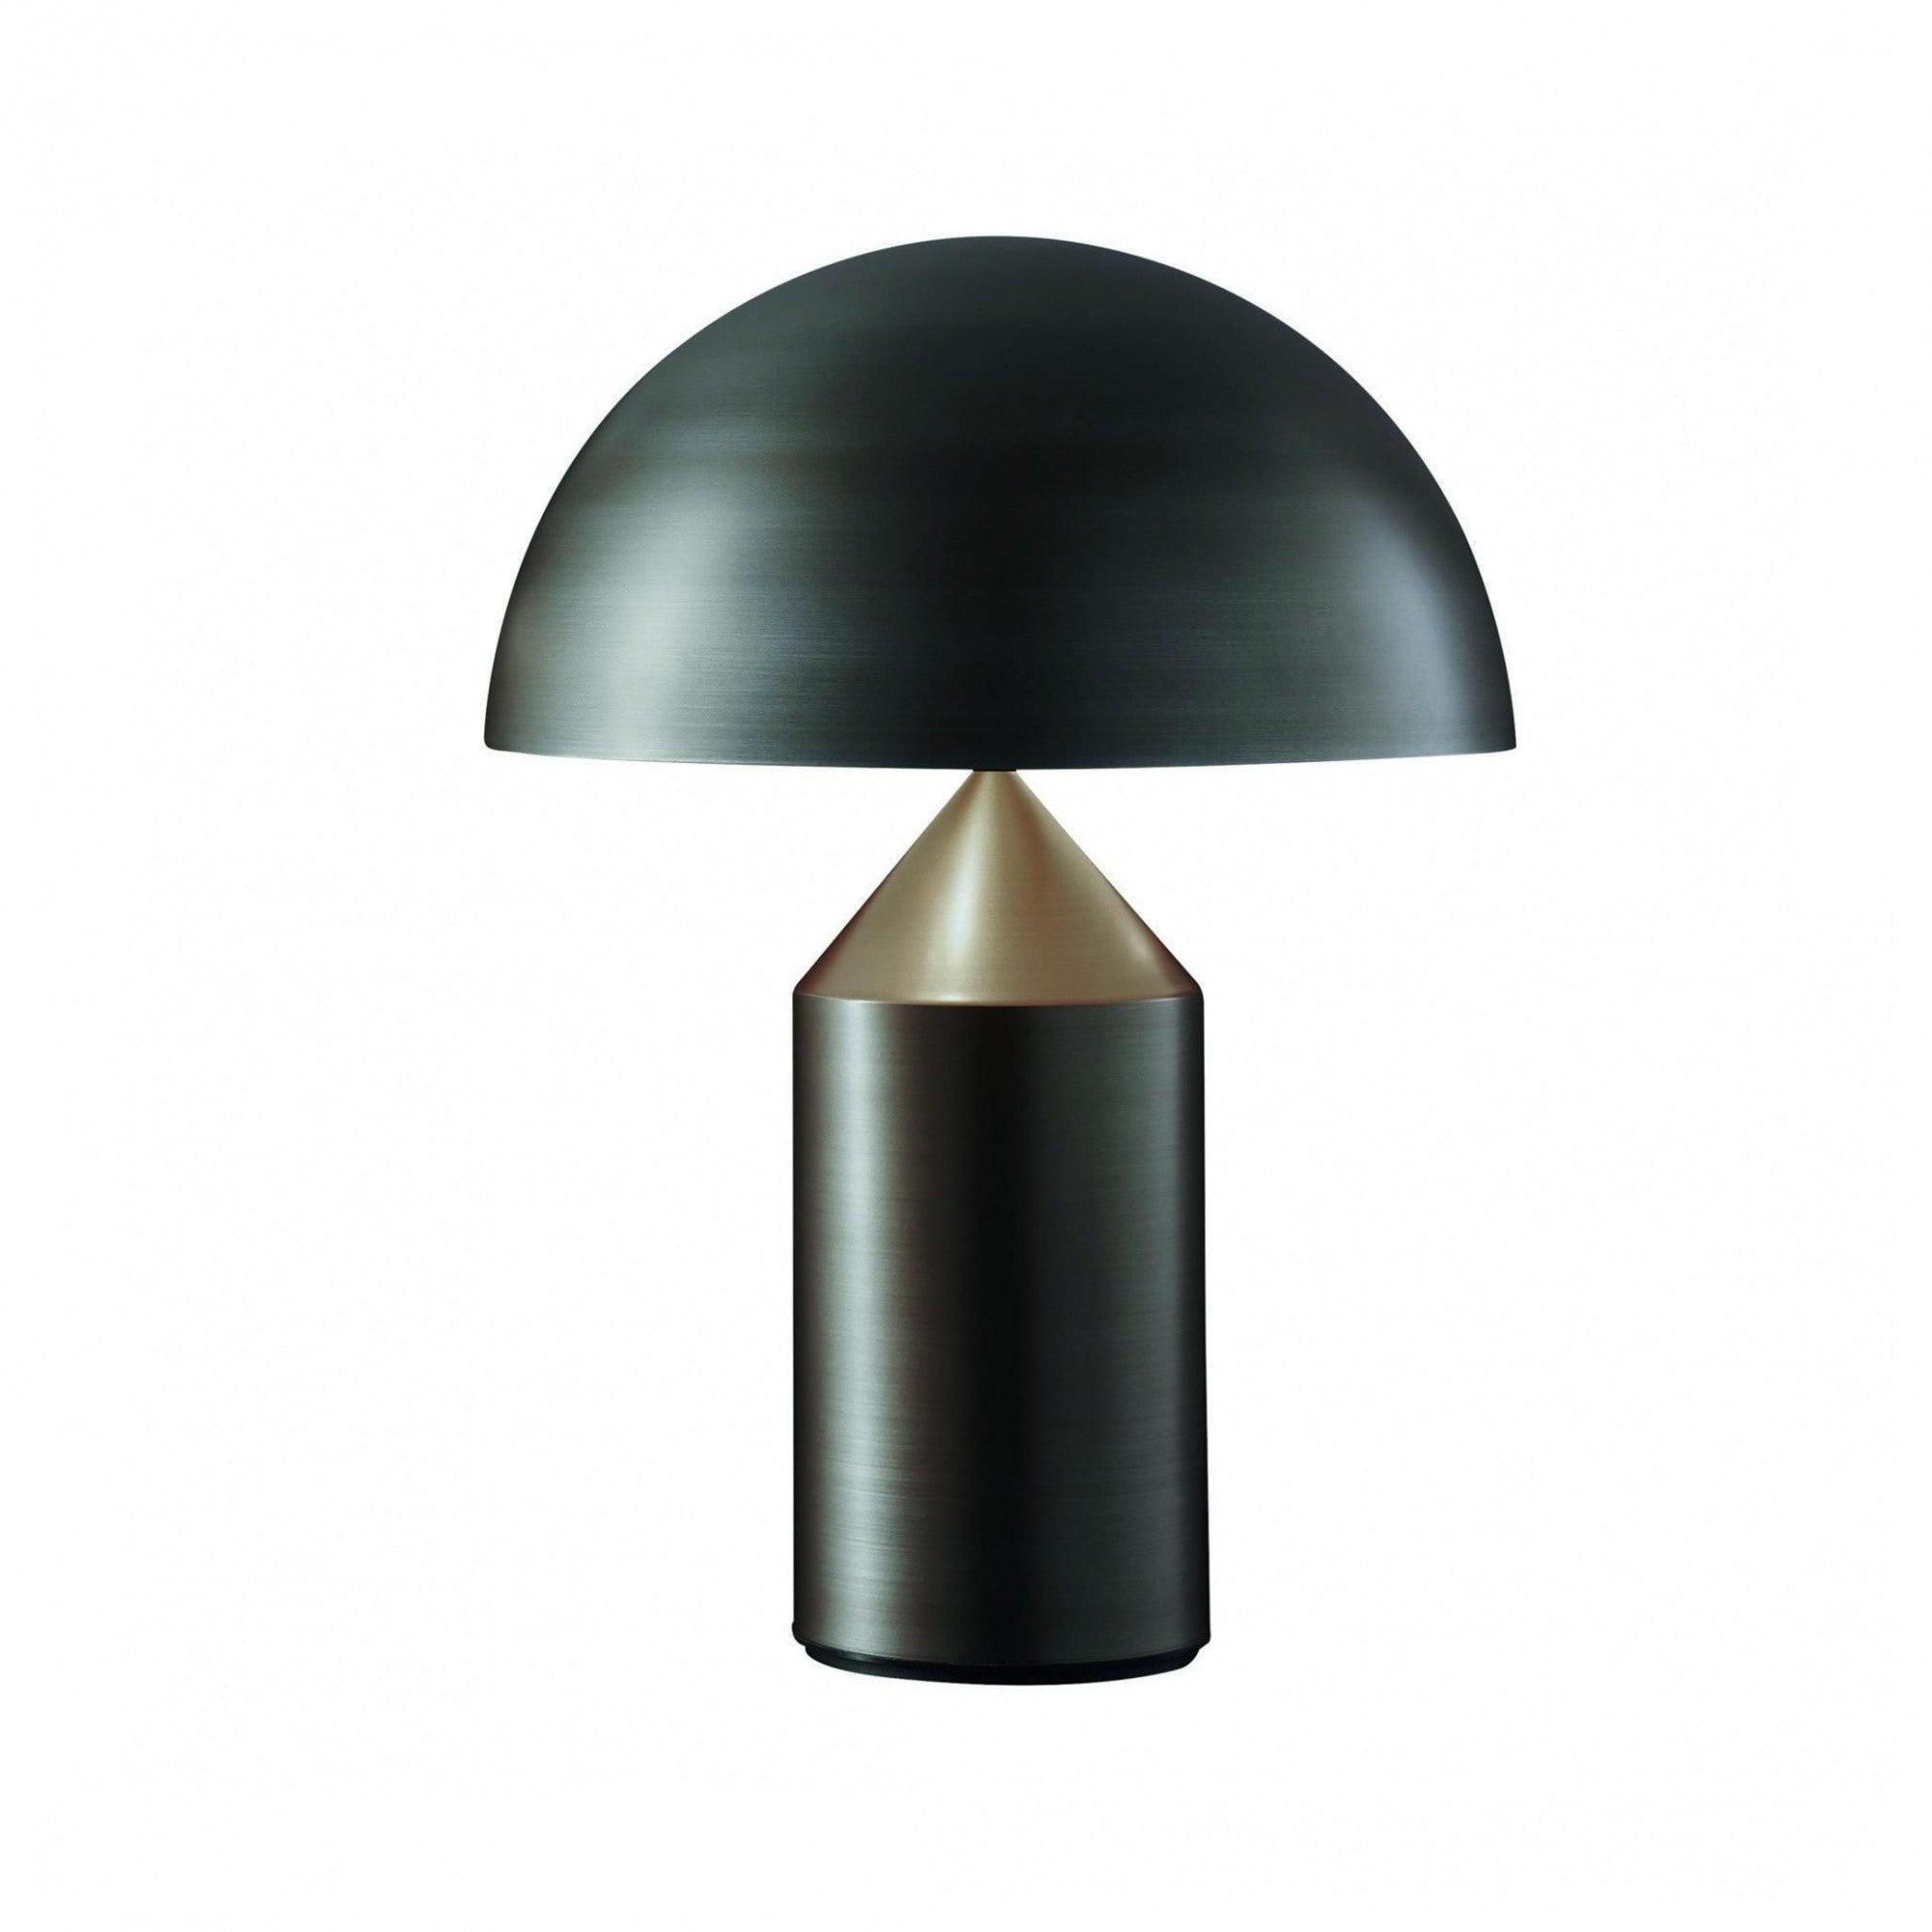 Oluce -Atollo Tischleuchte bronze-Leuchten-Oluce-Atollo 233 - H x Ø 70x50cm/mit Dimmer/ mit E27 Fassung-TOJU Interior